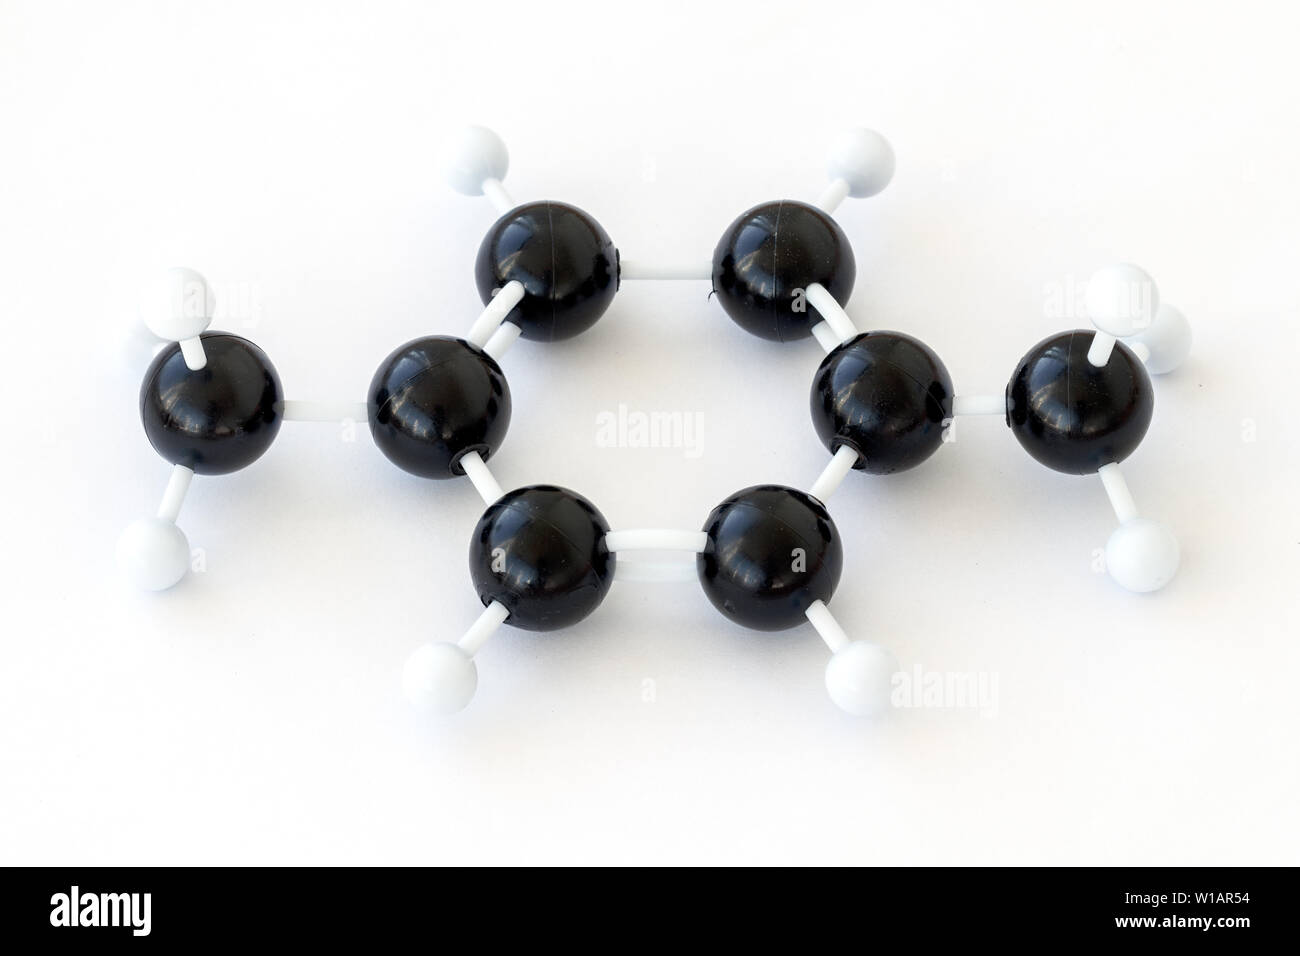 Kunststoff Kugel-und-stick Modell eines 1,4 dimethylbenzene oder para-xylol Molekül (CH3)2C6H4, einem der Xylol isomeres, mit kekule Struktur dargestellt. Stockfoto